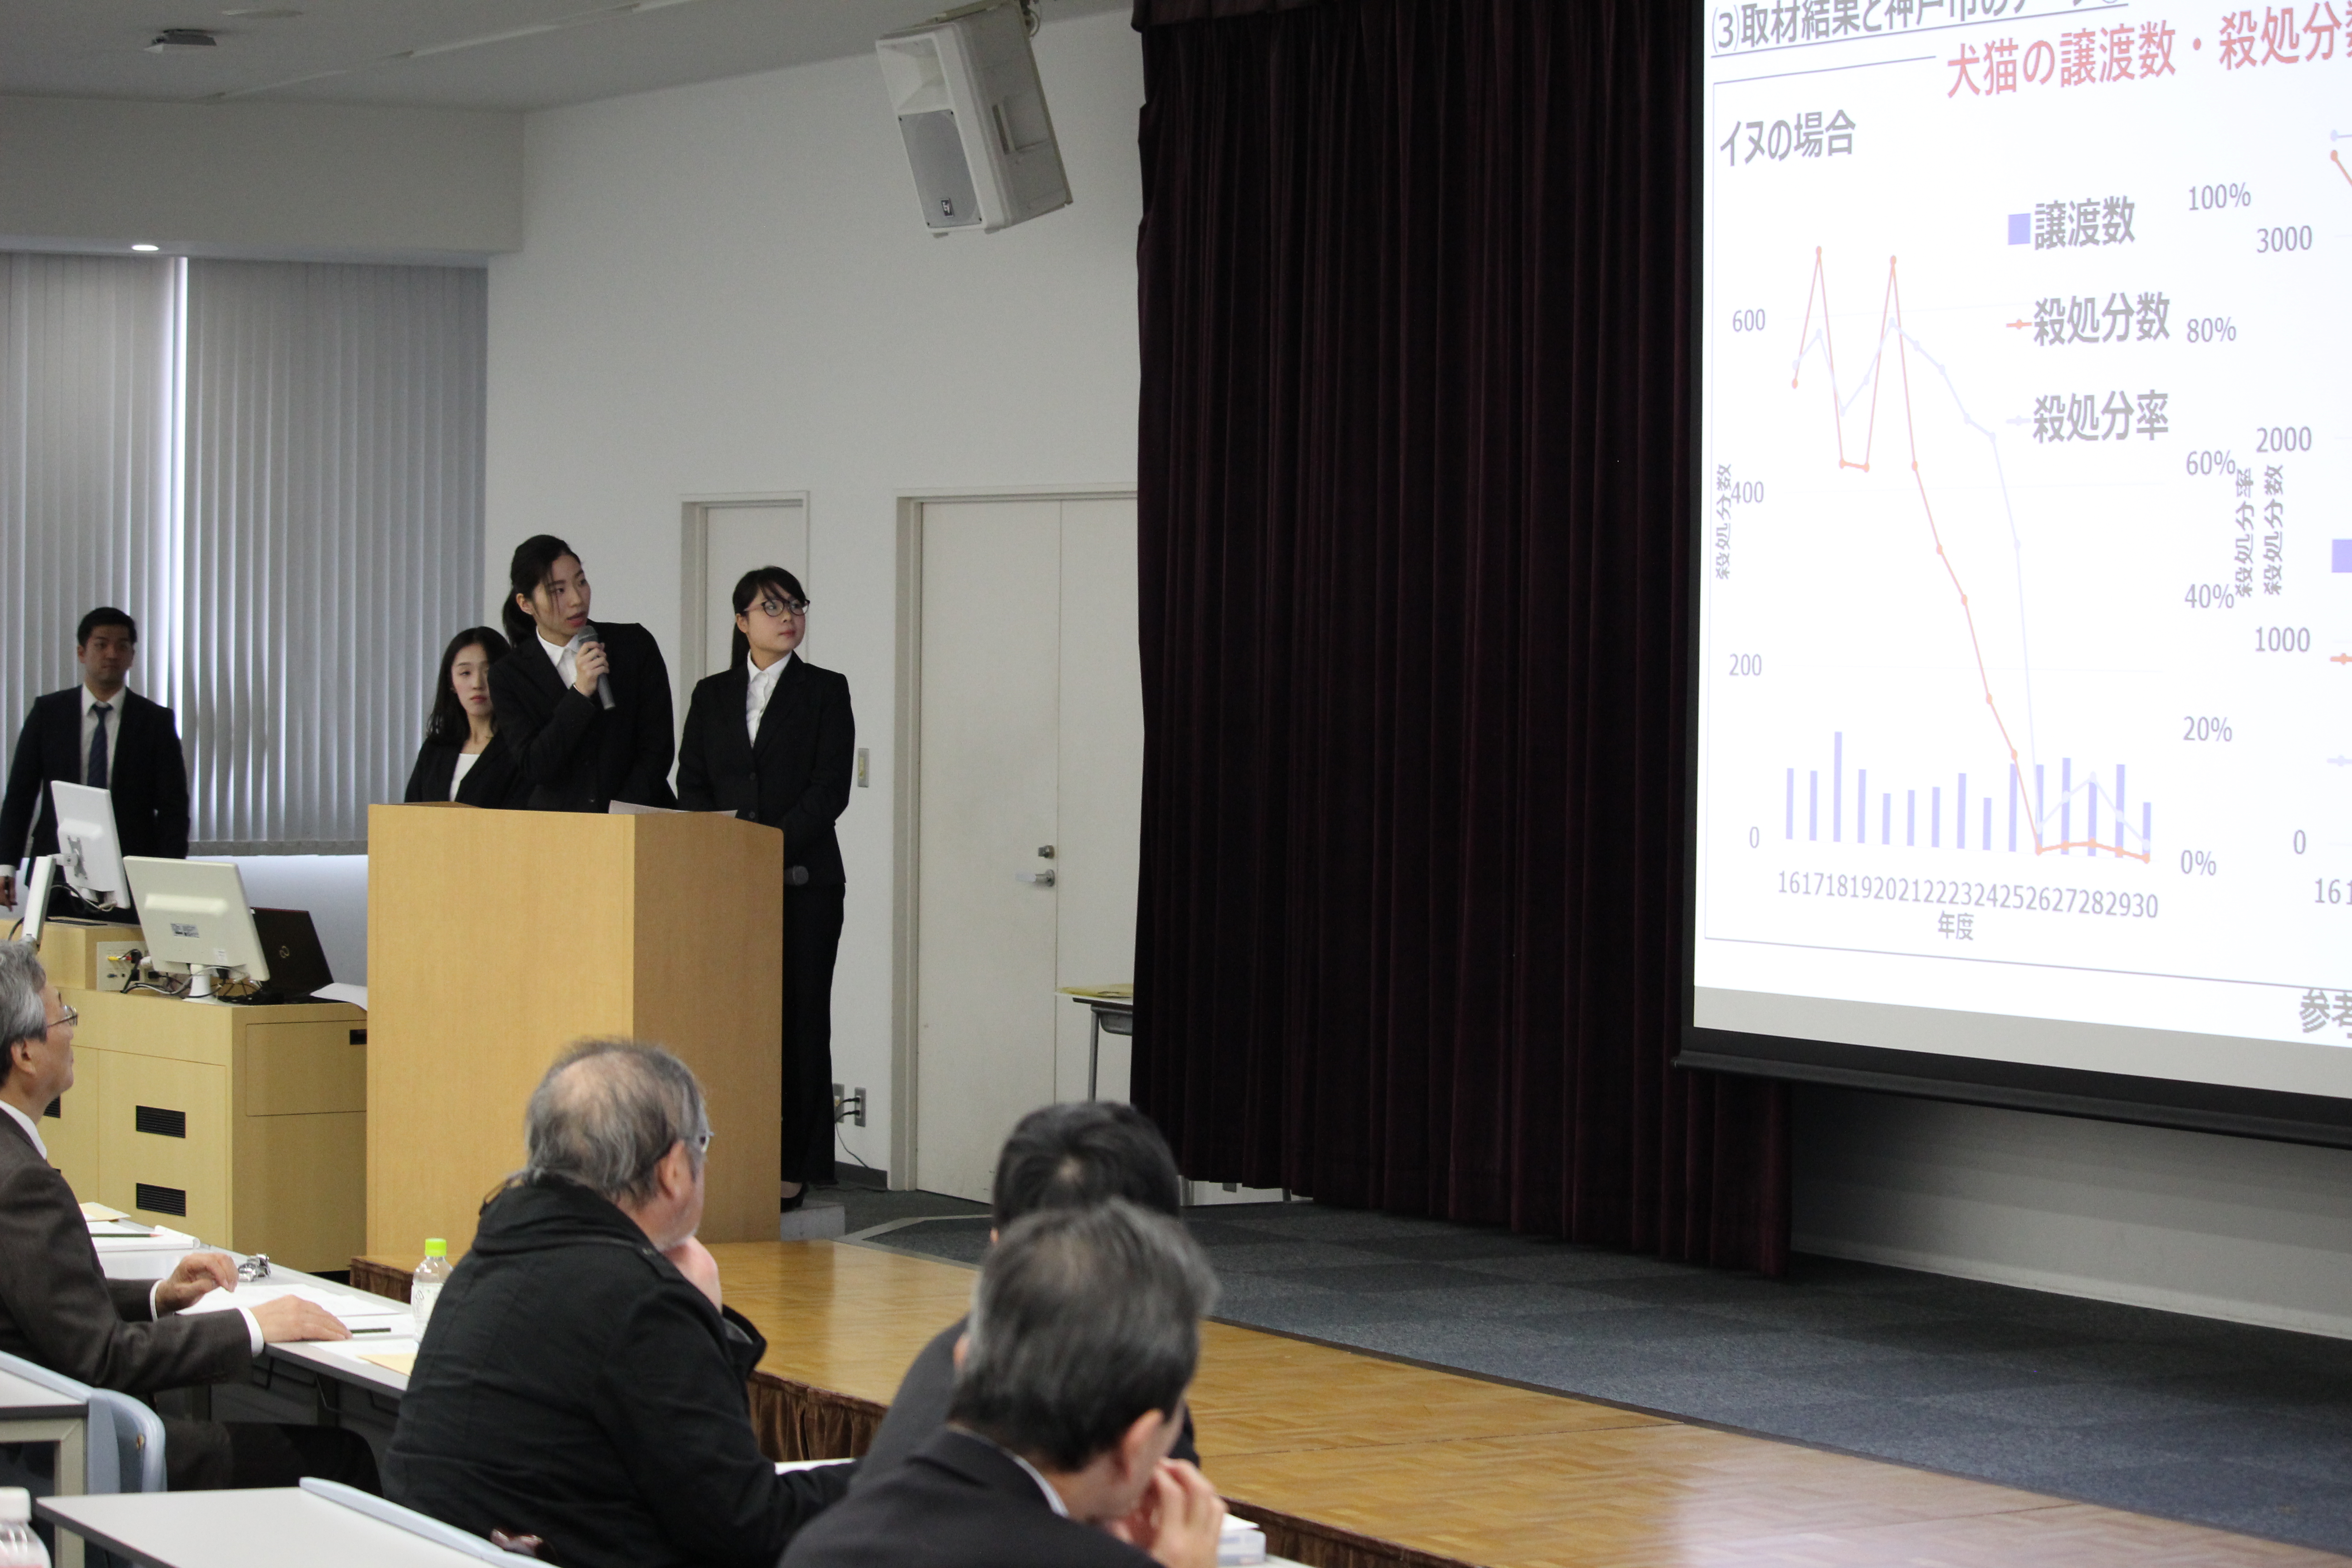 第11回神戸国際大学グループワークコンテスト プレゼンテーション大会を実施しました 神戸国際大学 St Michael S Kiu